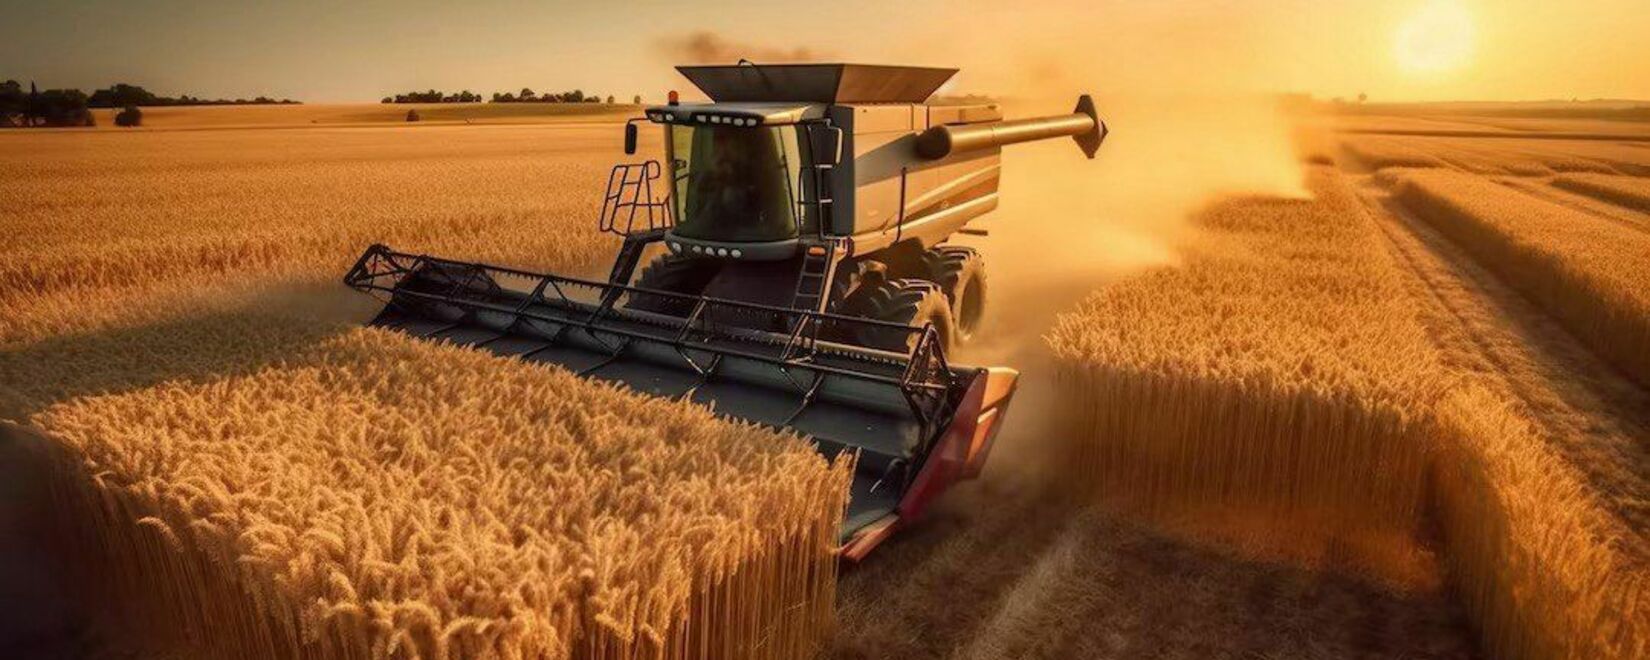 Внутренние цены на российскую пшеницу выросли до уровня марта